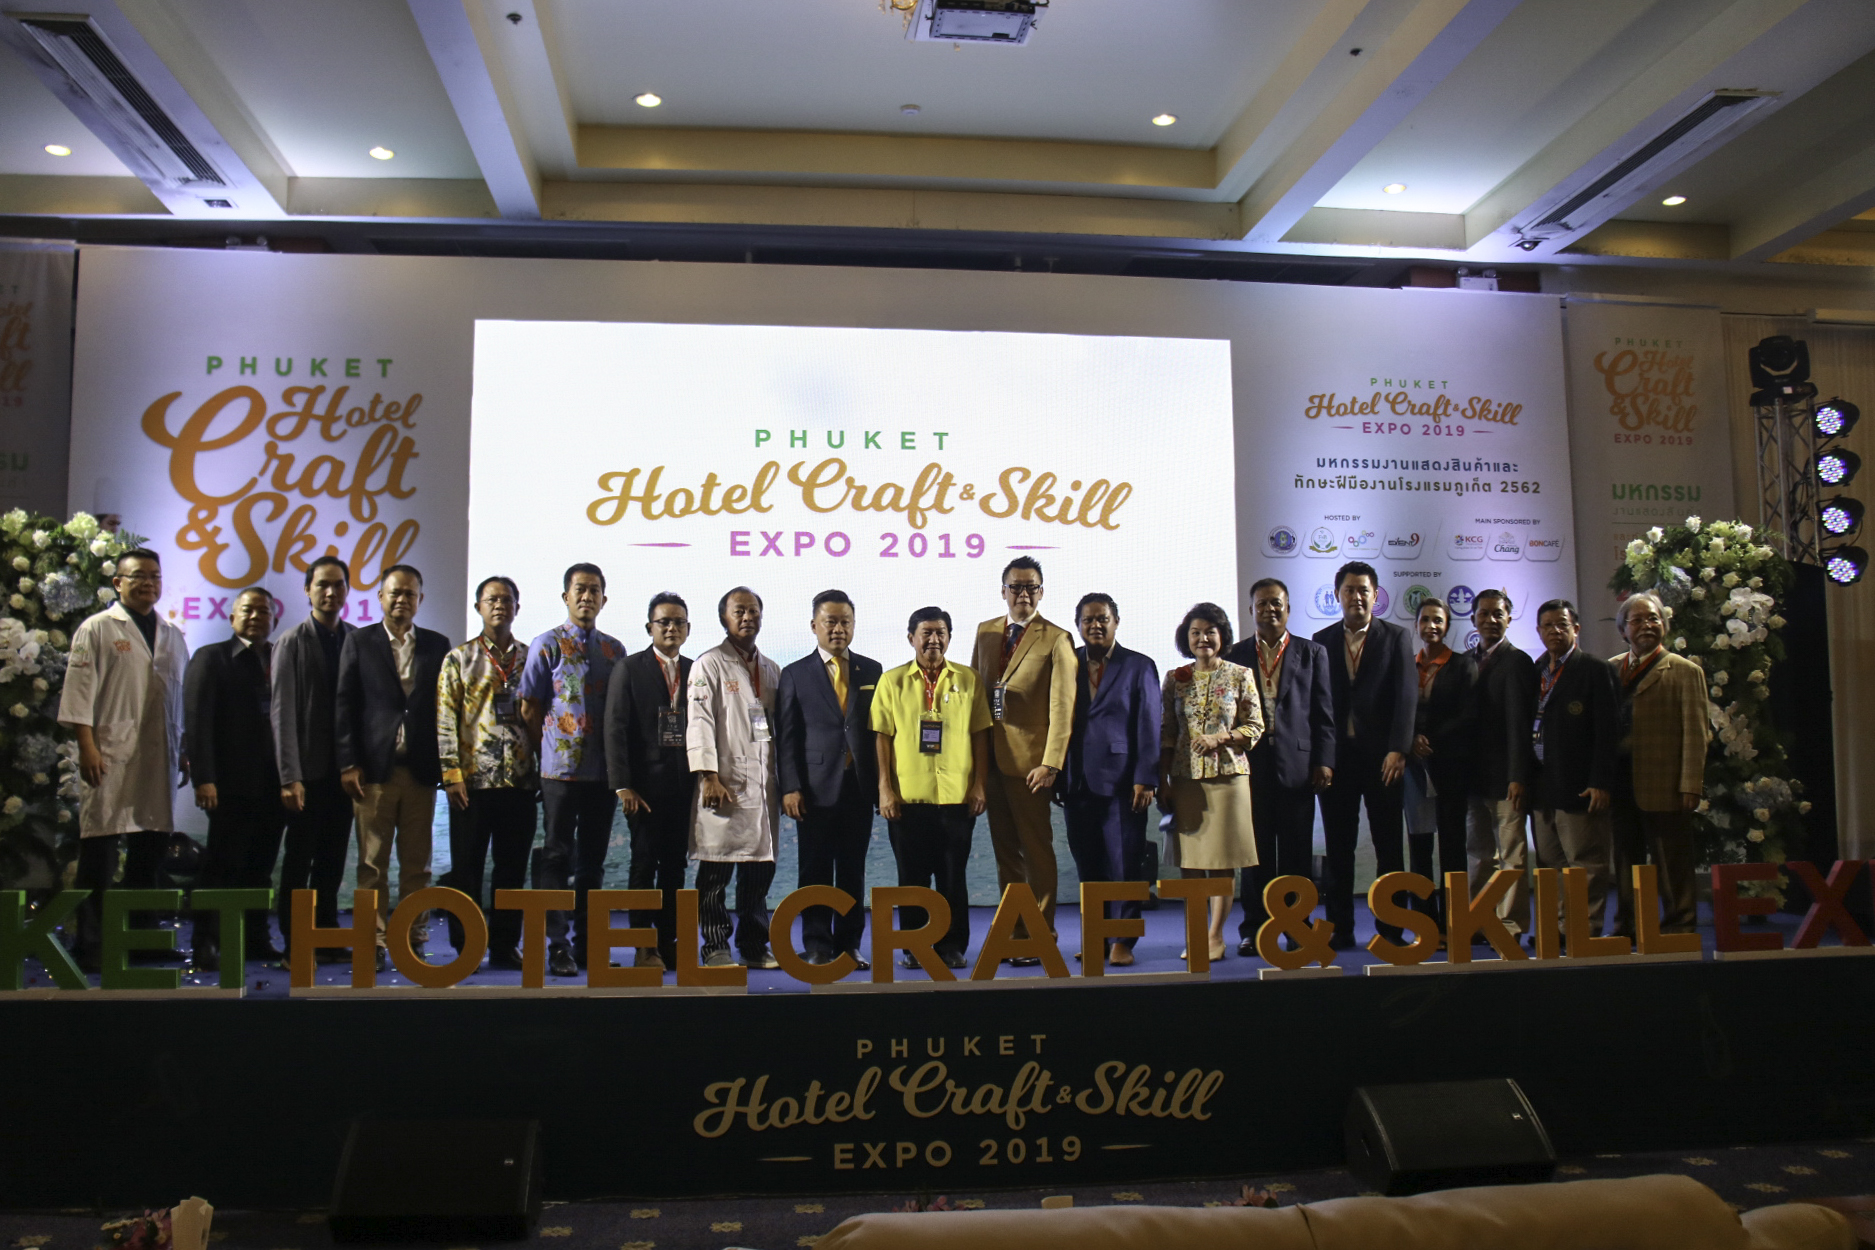 เริ่มแล้ว ! งาน Phuket Hotel Craft & Skill Expo 2019 มหกรรมงานแสดงสินค้าและทักษะฝีมืองานโรงแรมภูเก็ต 2562